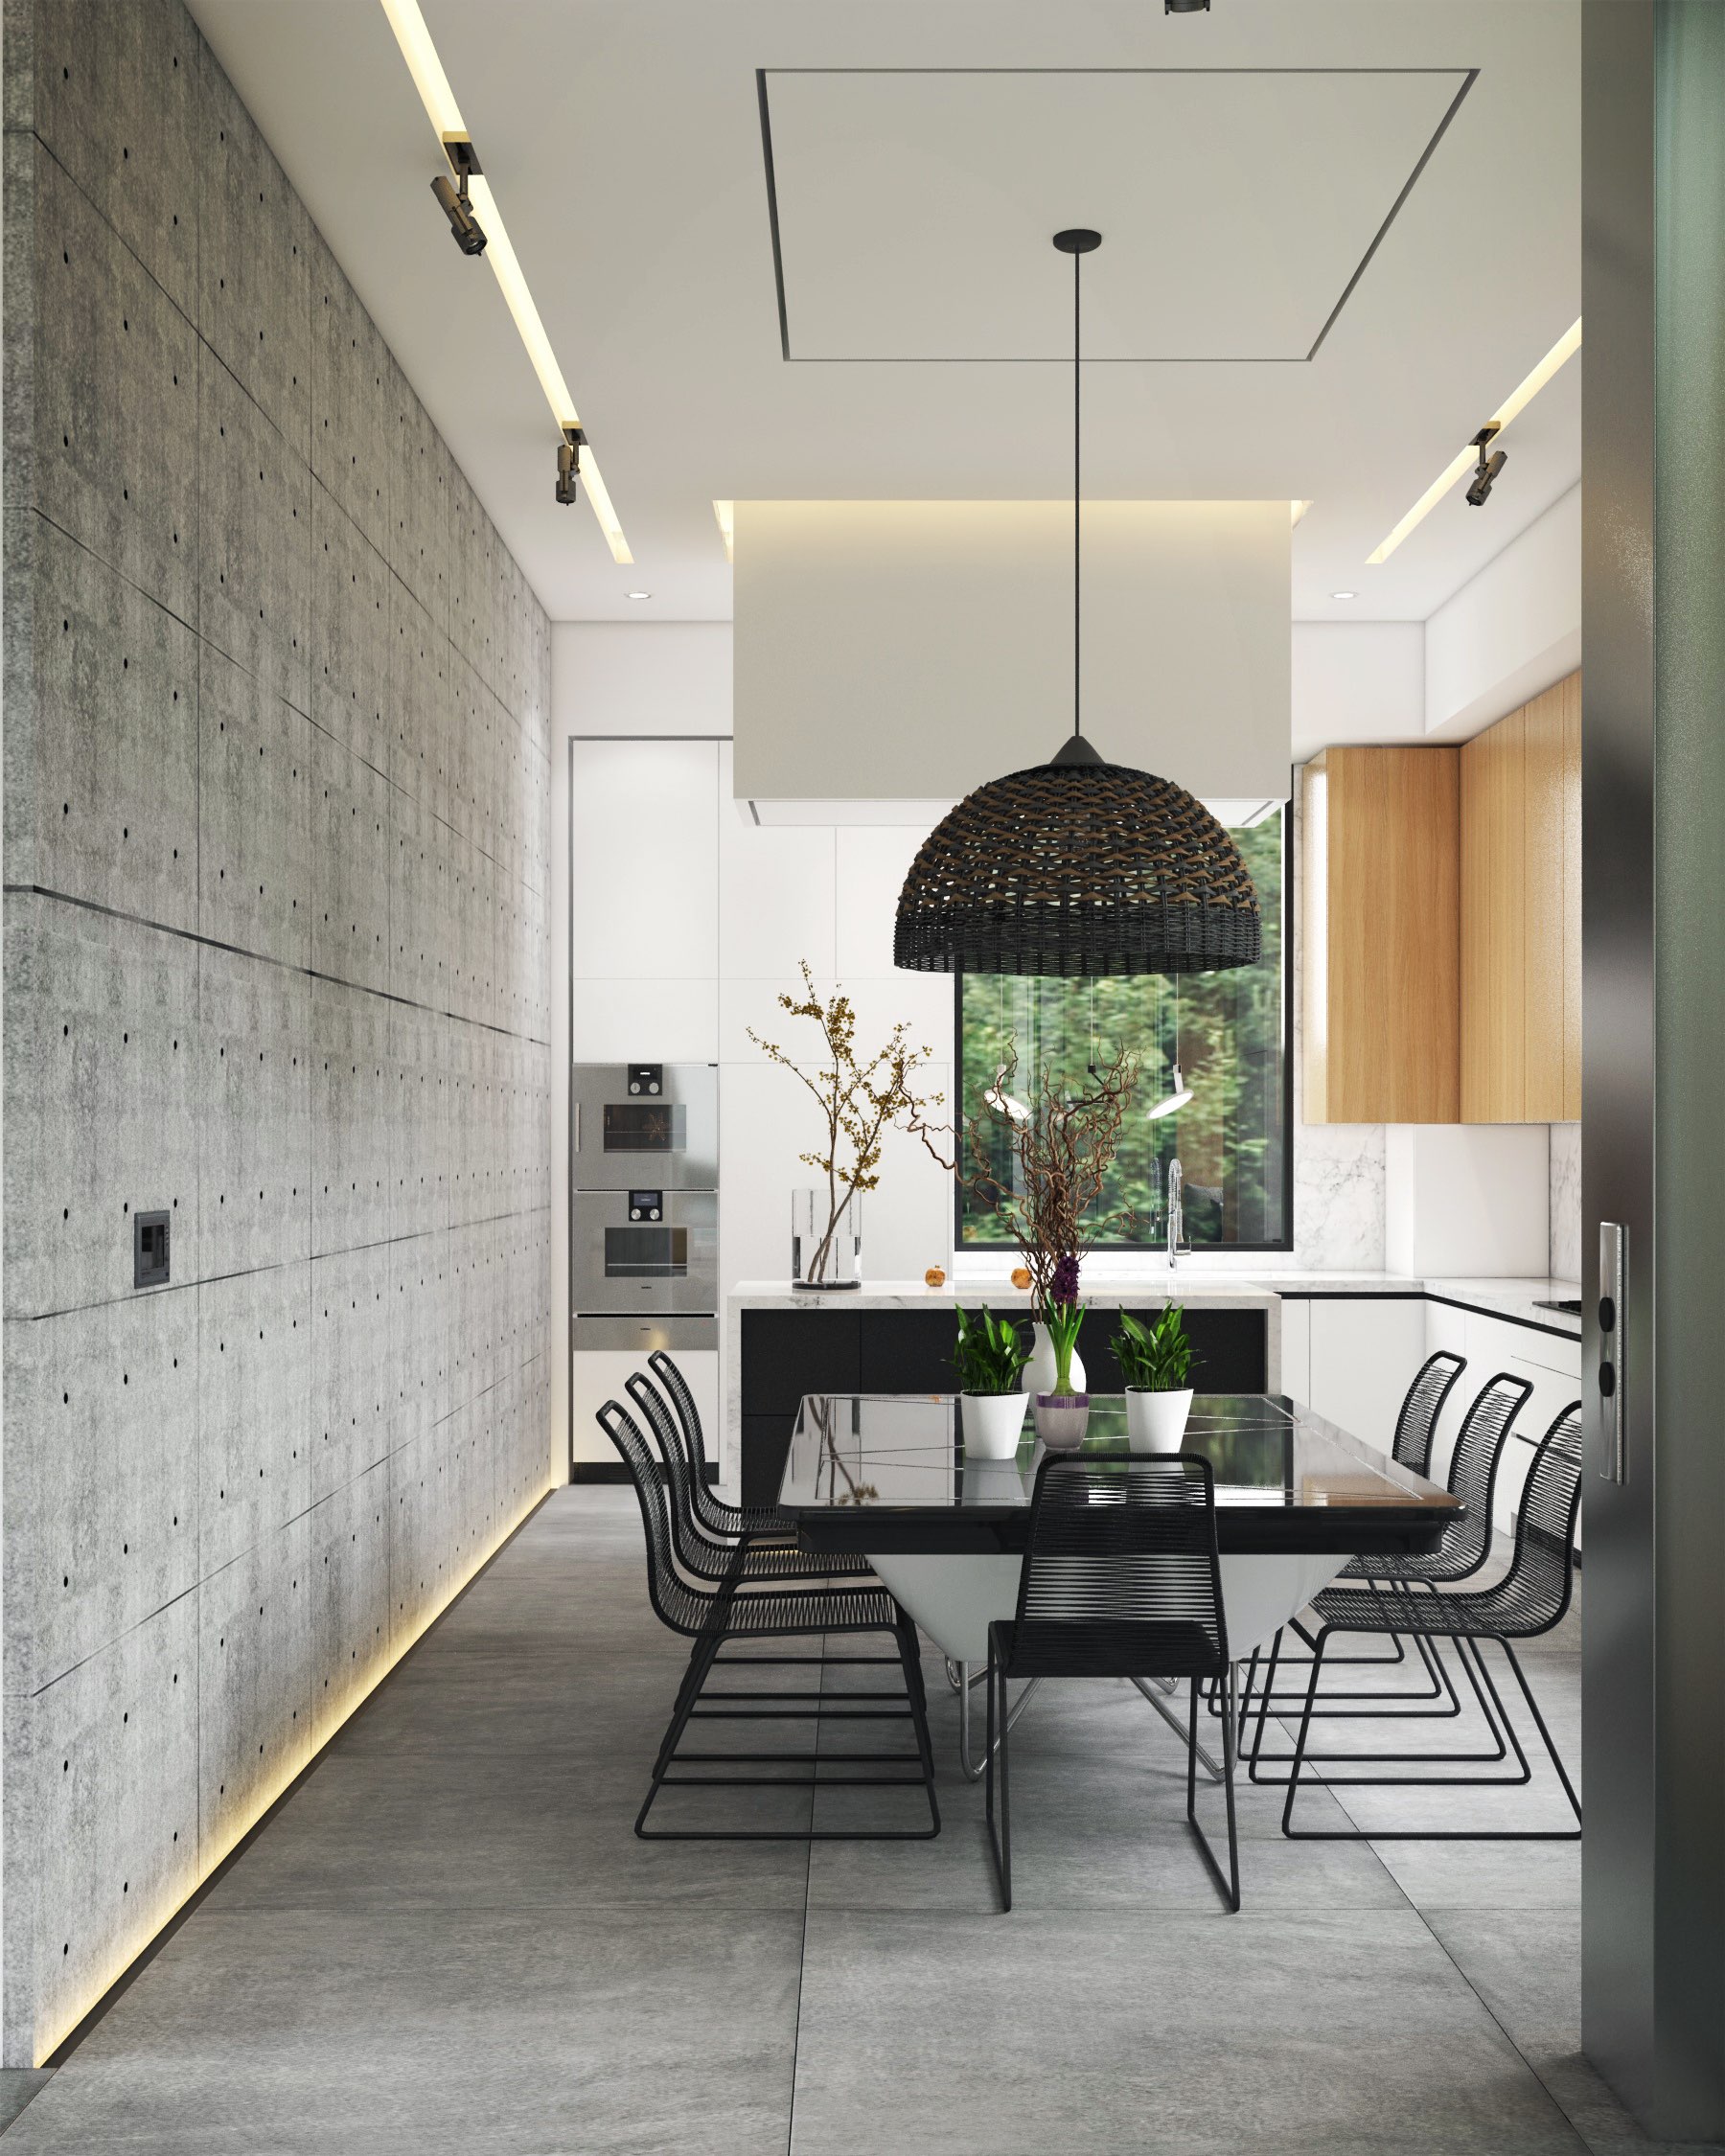 Sử dụng “vật liệu xanh” trong thiết kế nội thất biệt thự hiện đại | Nguồn ảnh: Amir Abbas Habibi.